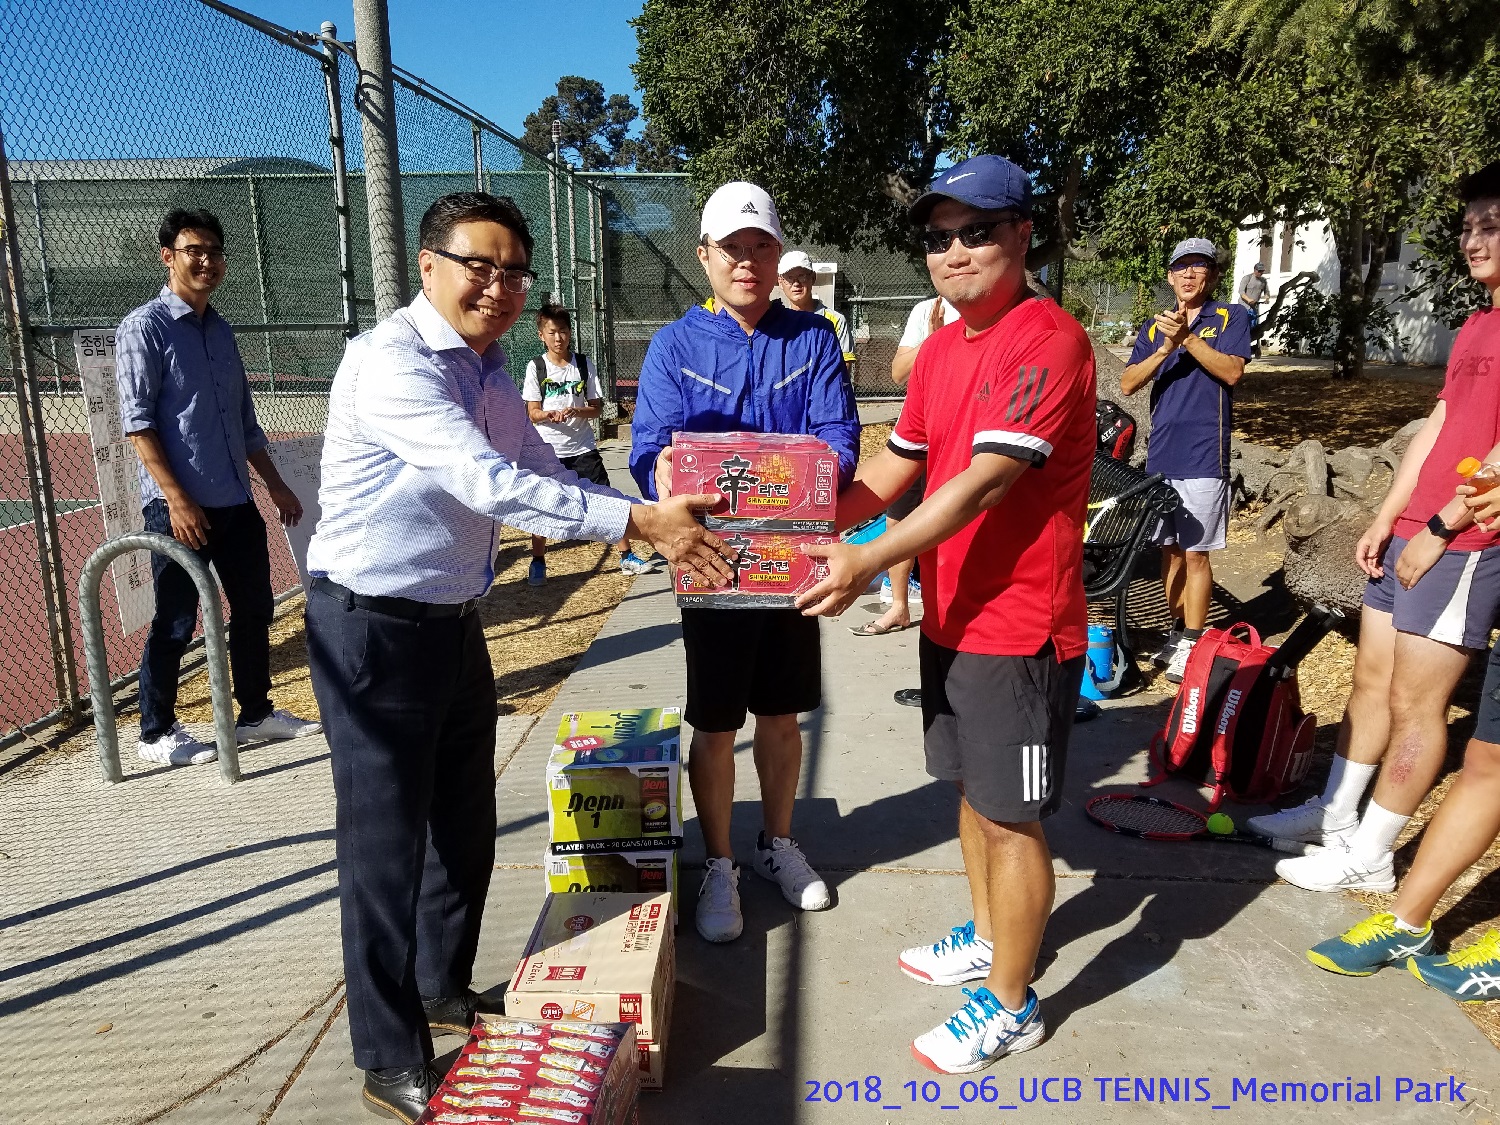 resized_2018_10_06_UCB Tennis at Memorial Park_152235.jpg